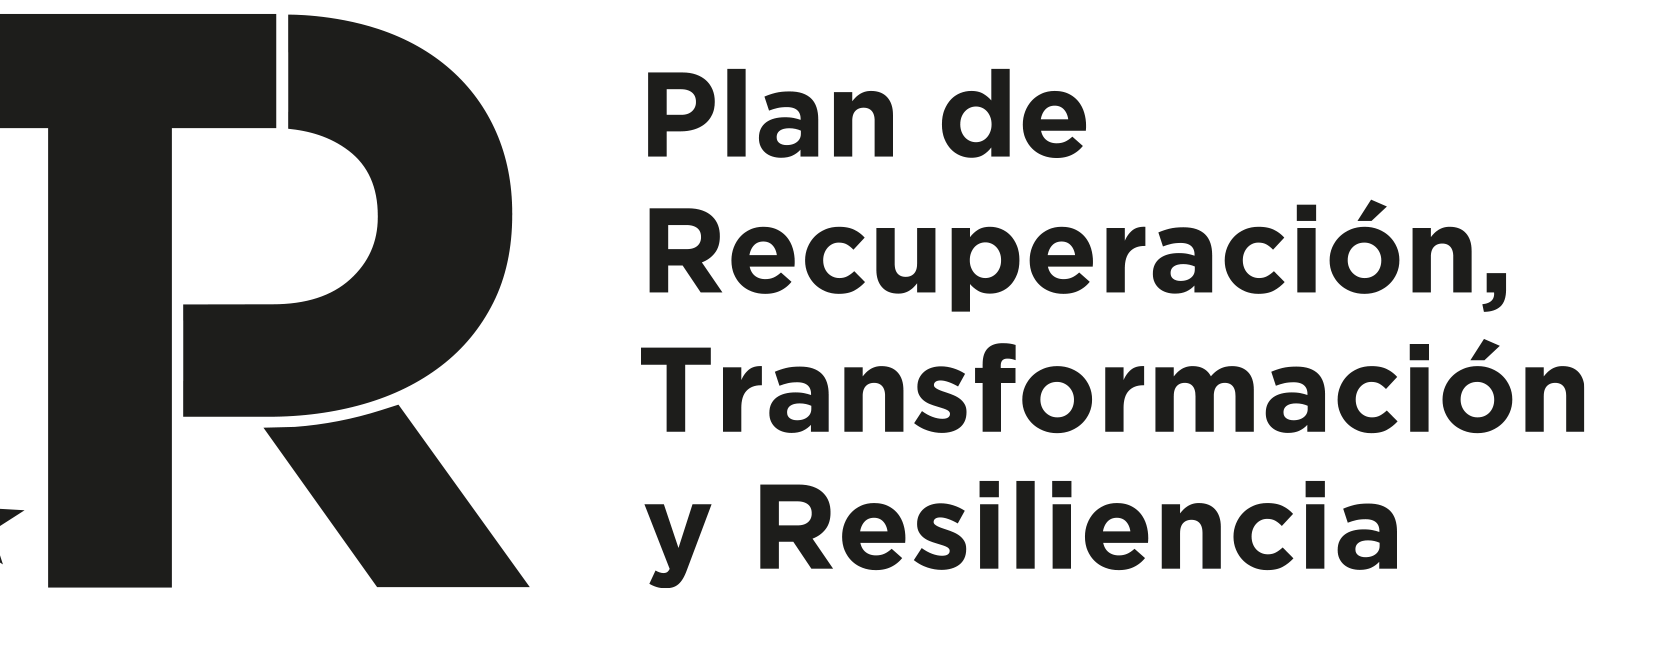 Logo Plan de Recuperacion, Transformacion y Resiliencia